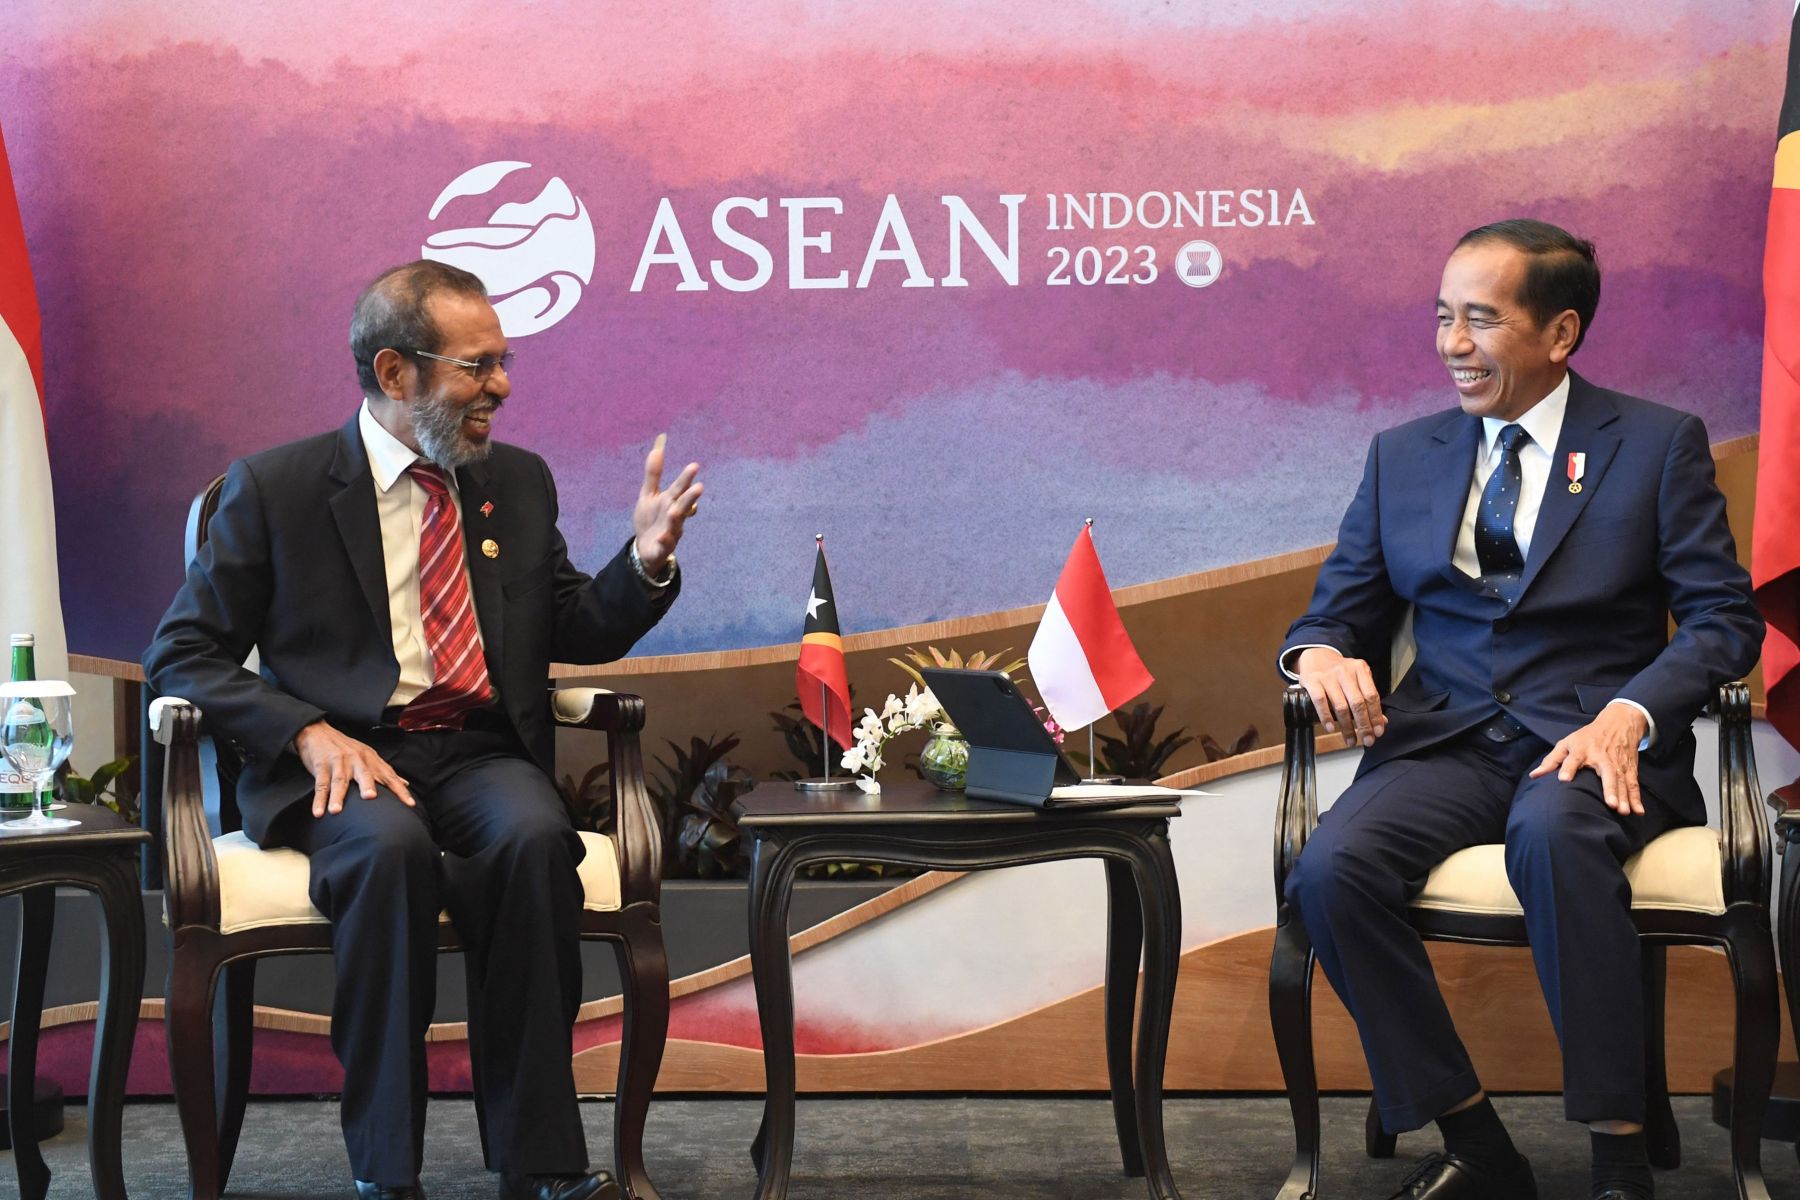 Jokowi Nyatakan Indonesia Dukung Penuh Terhadap Timor Leste Jadi Keanggotaan Asean